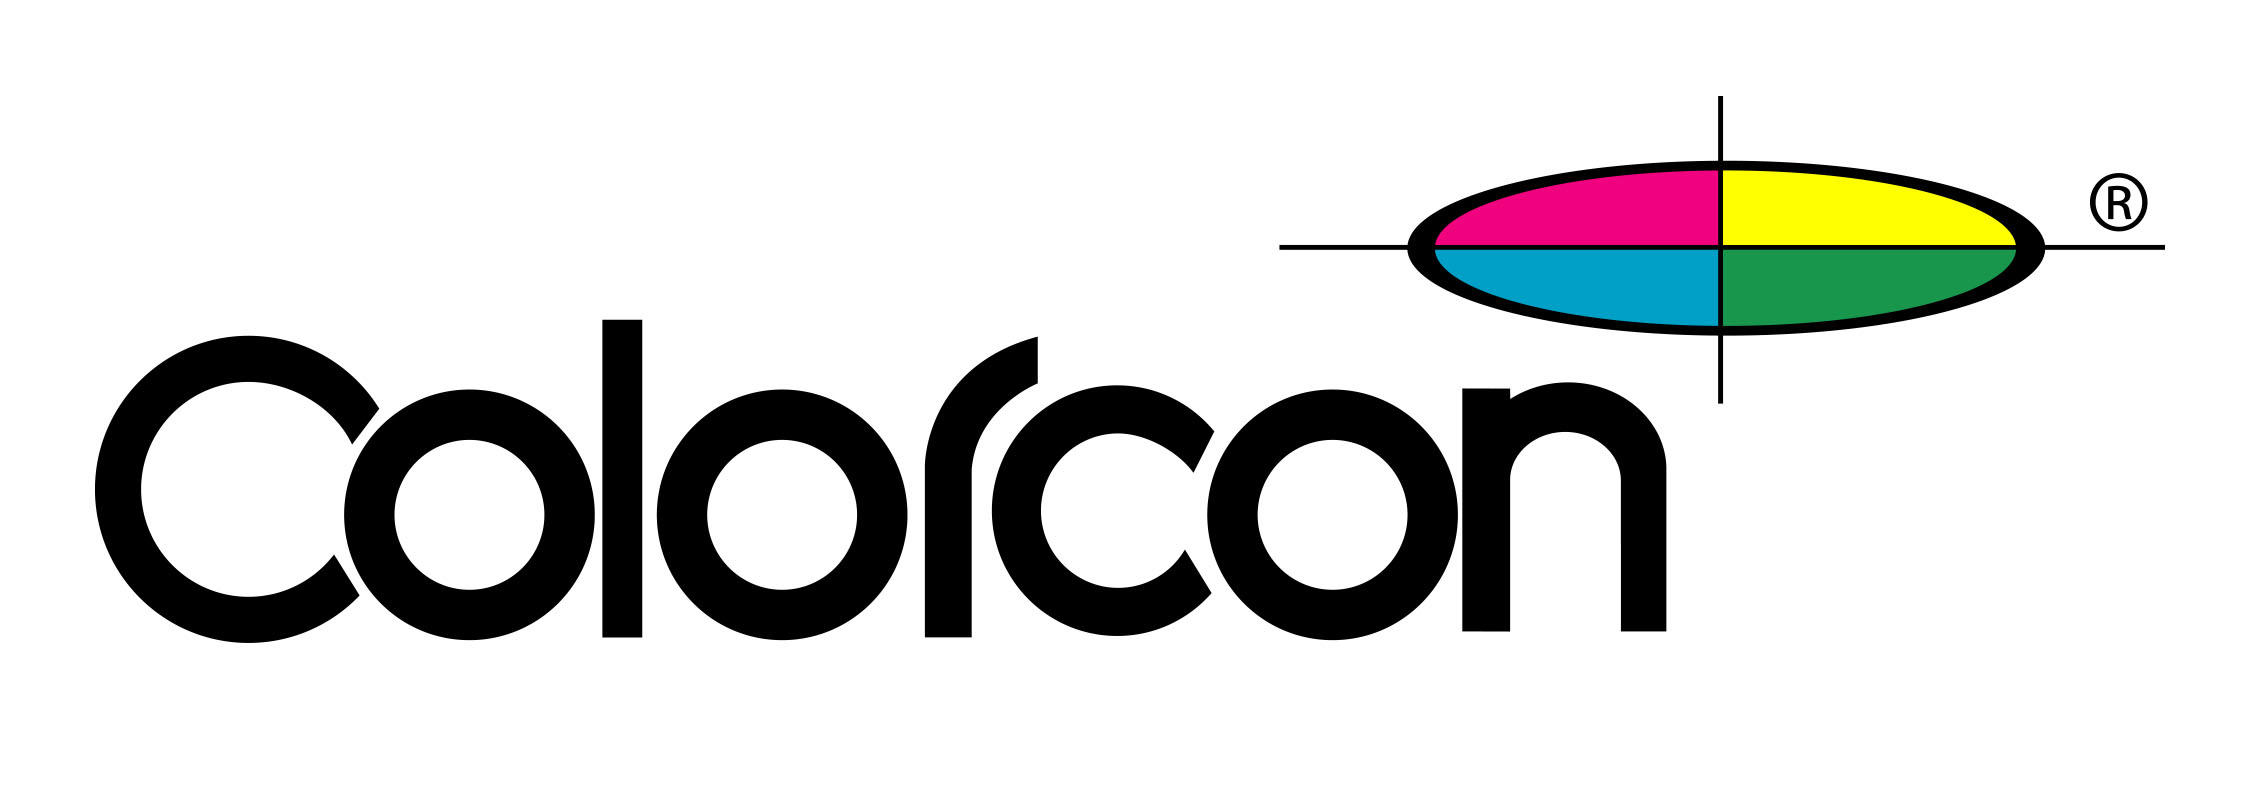 Colorcon logo c.jpg